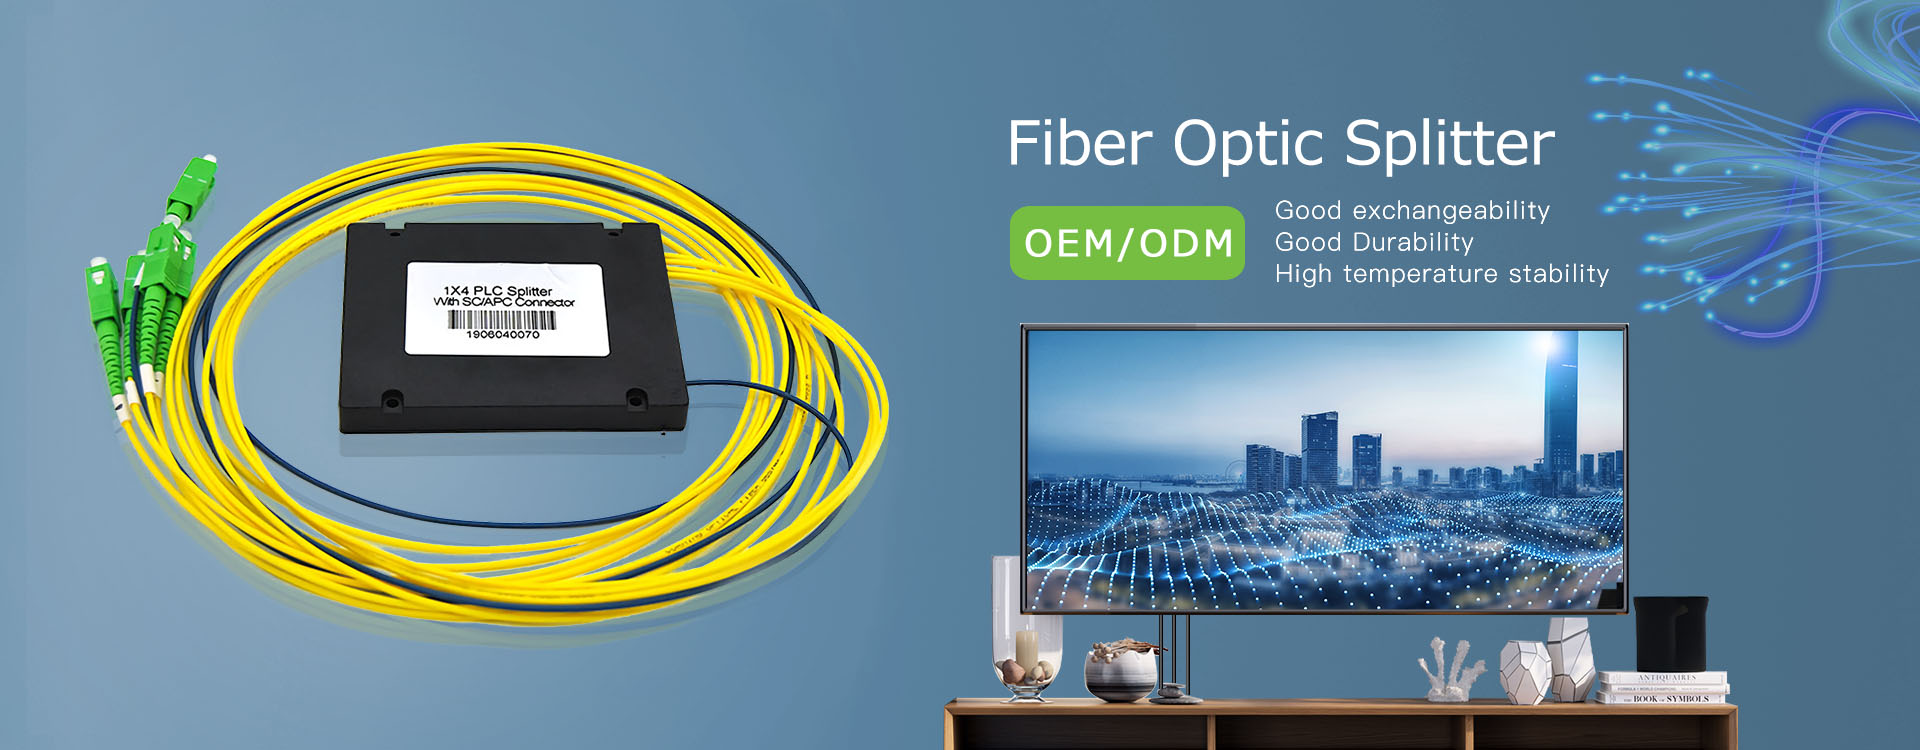 Nieuwste verkopende High Precision Fiber Optic Splitter-ontwerp voor klanten: